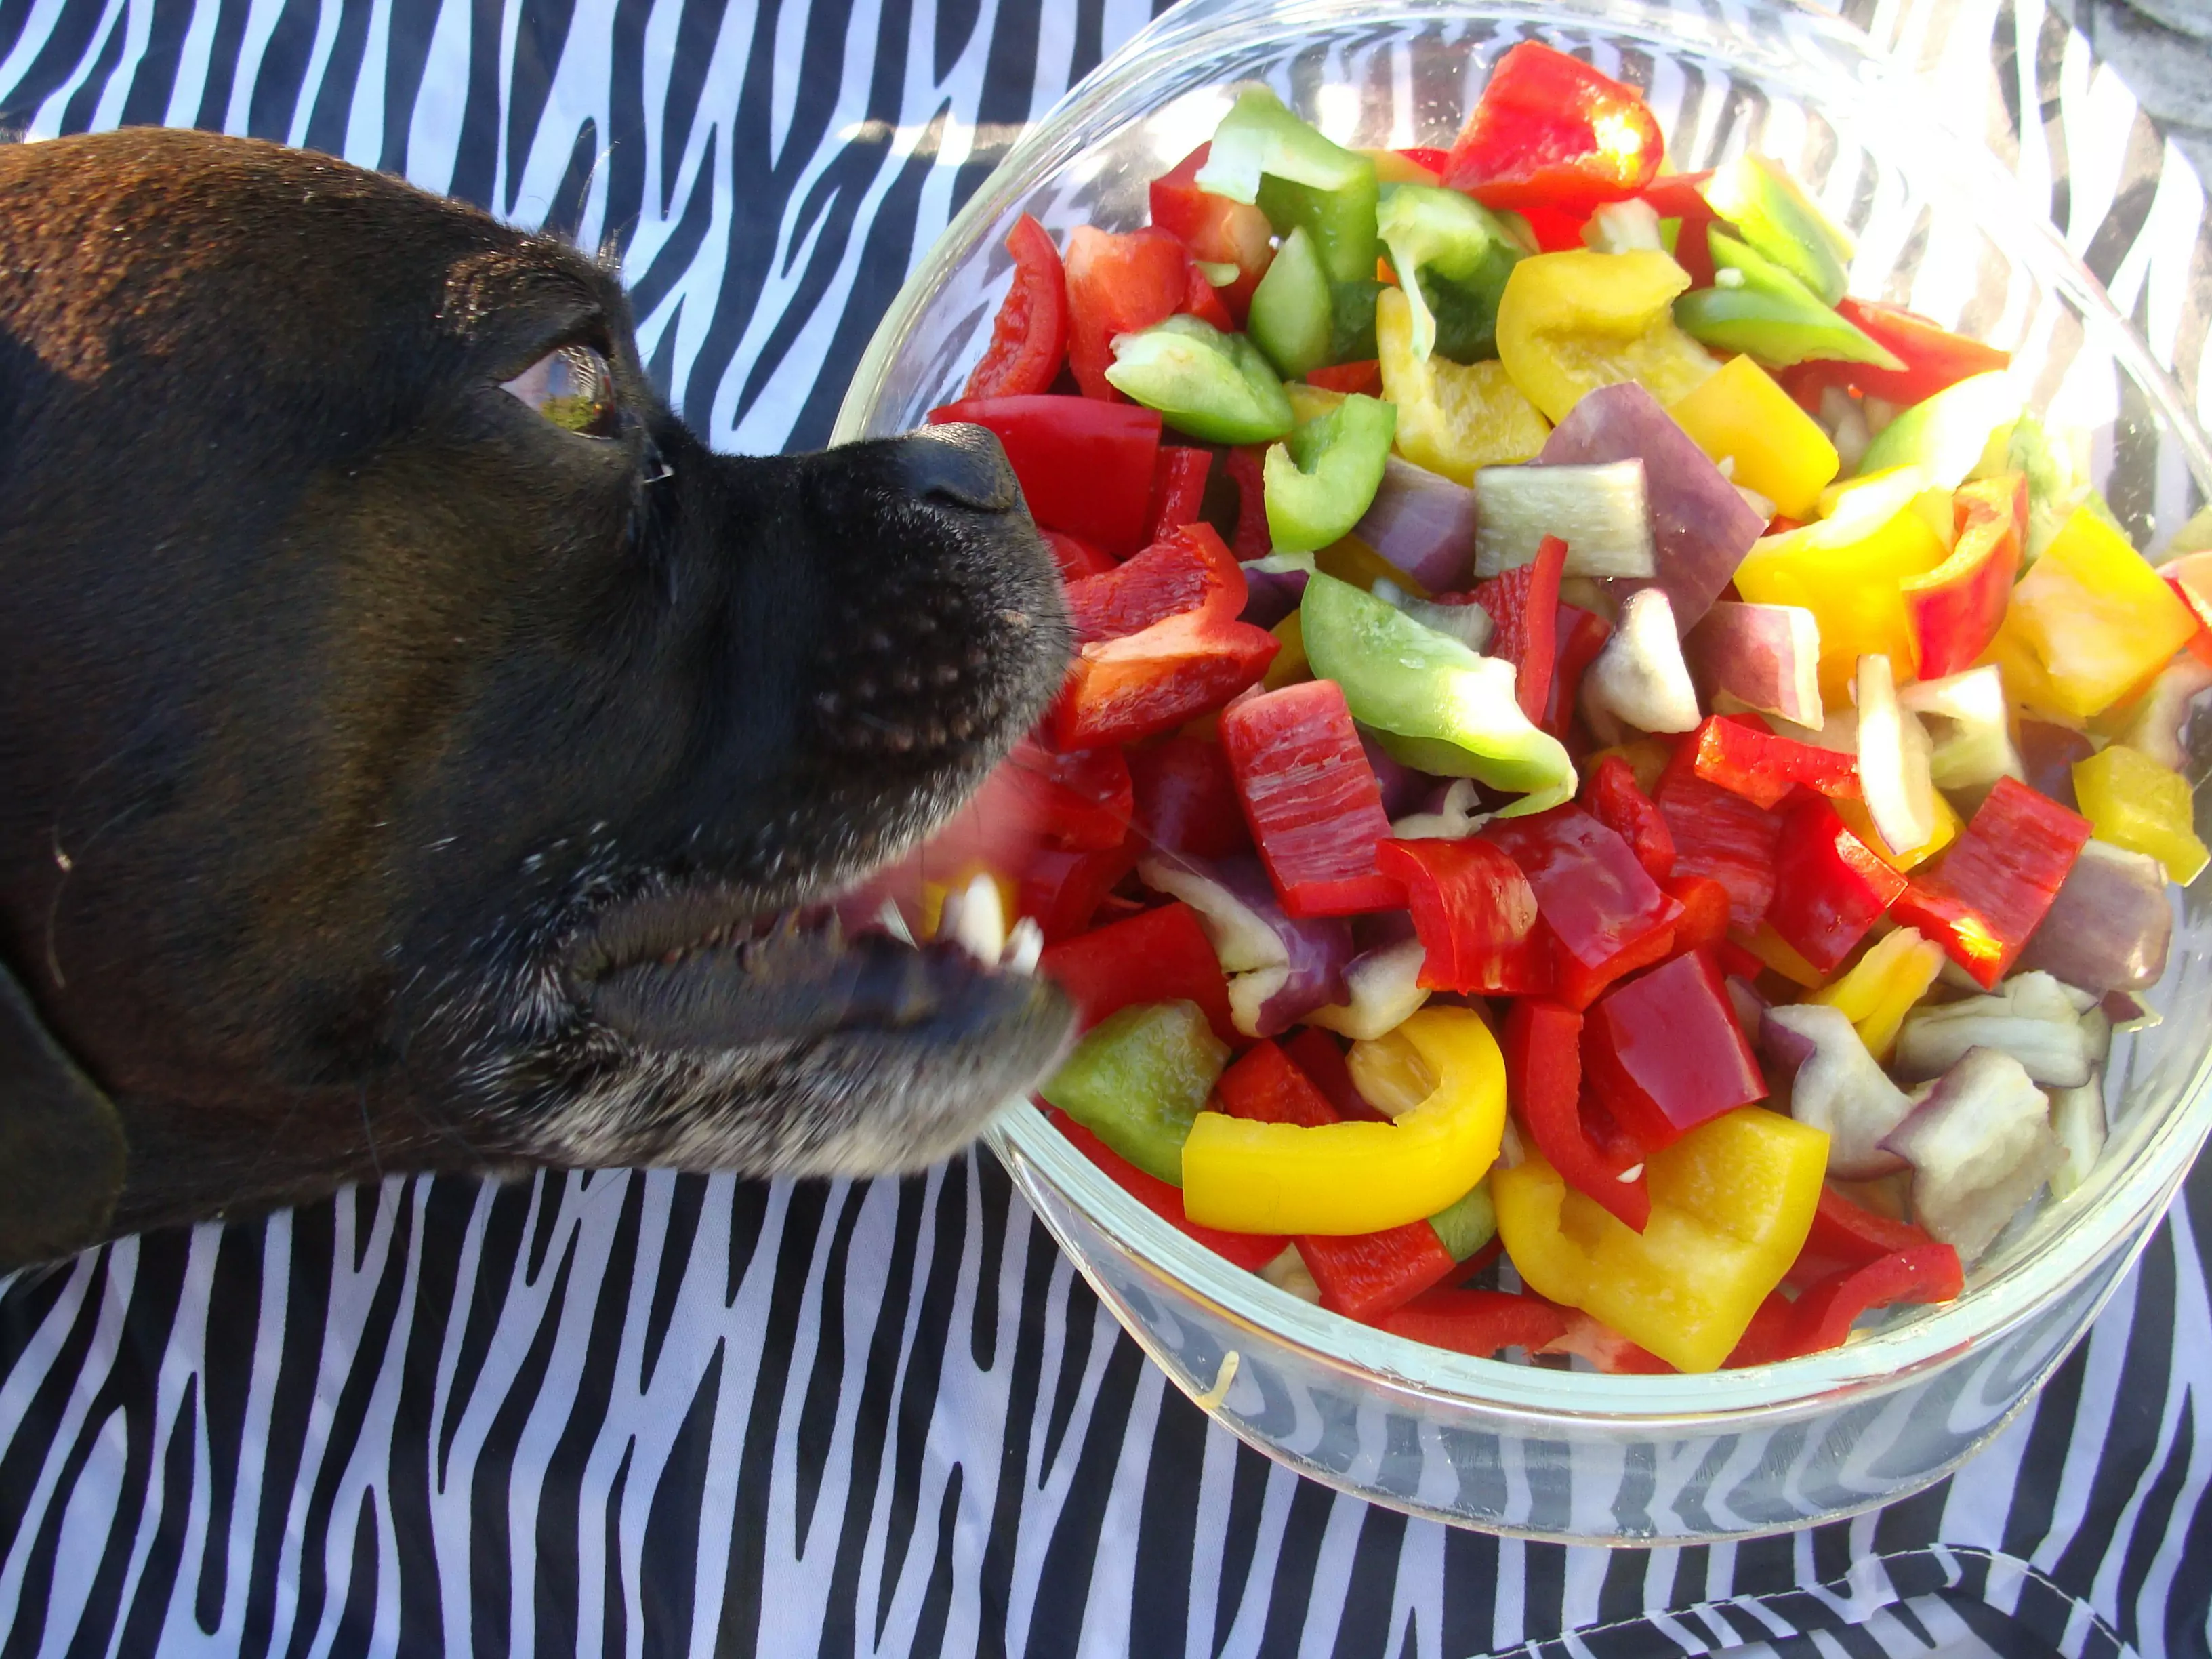 Les chiens peuvent-ils manger des piments ?